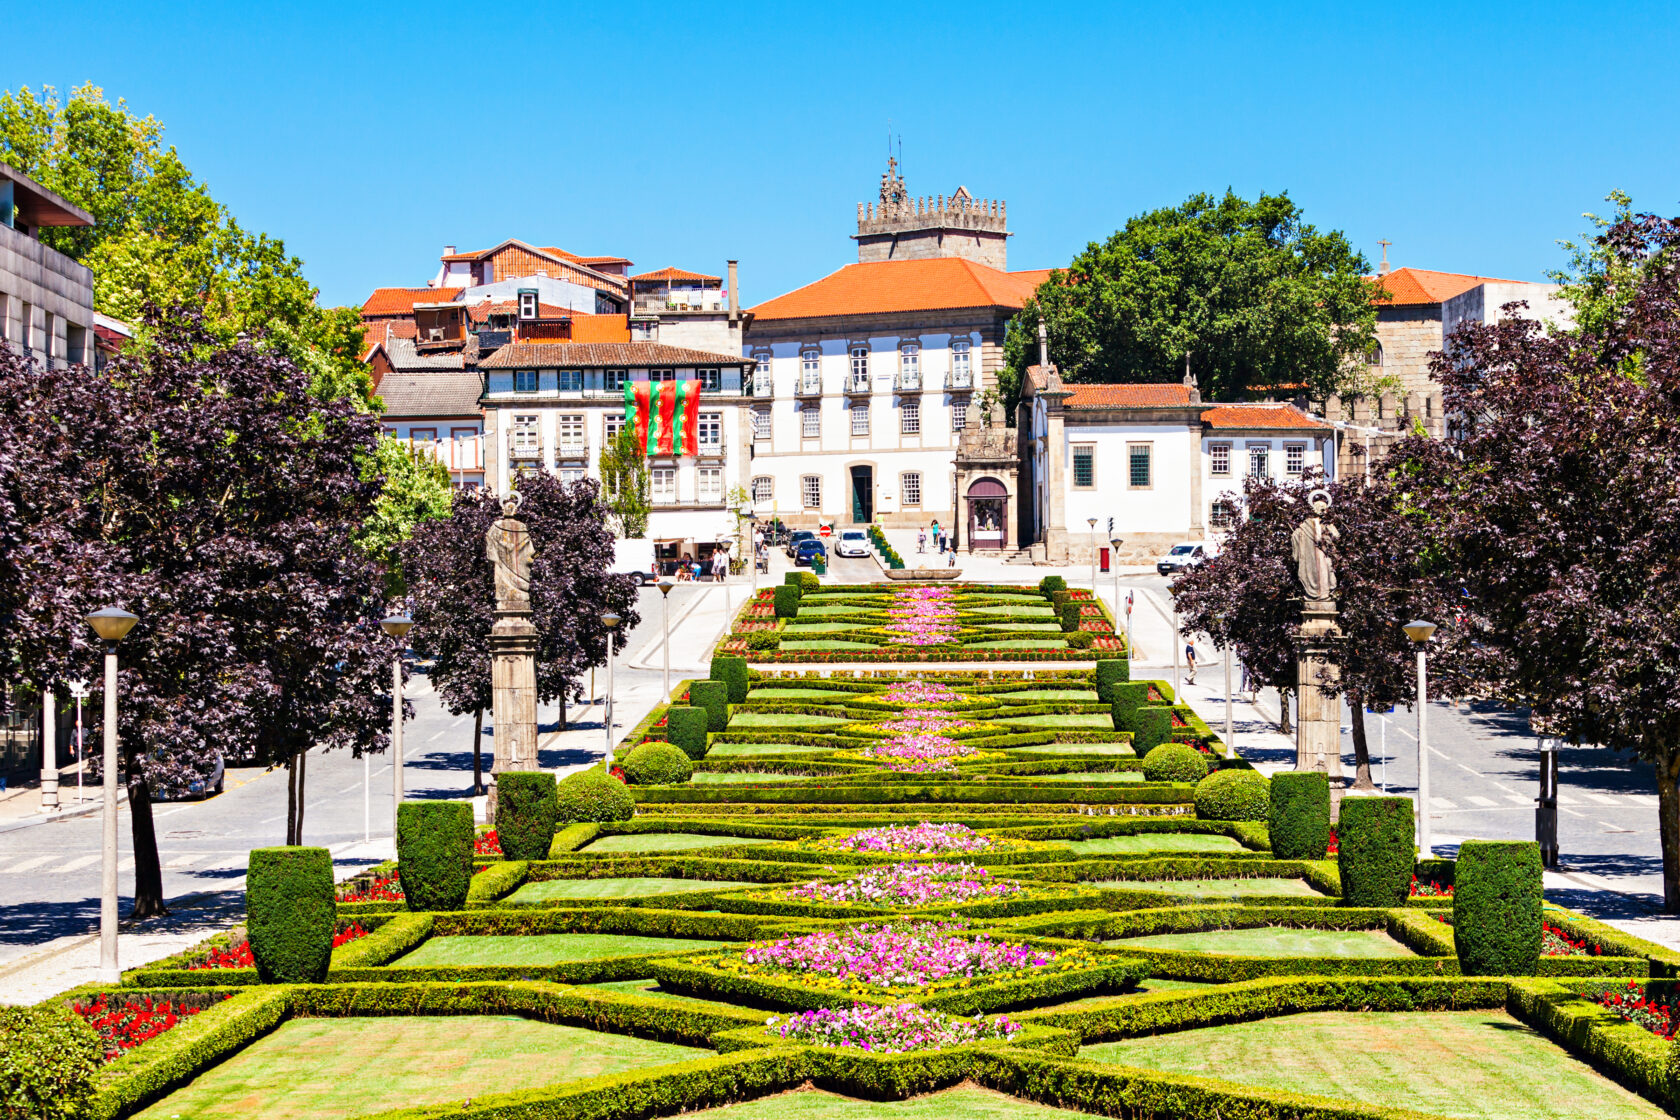 A garden in Guimaraes, Portugal (an Atlantis site).